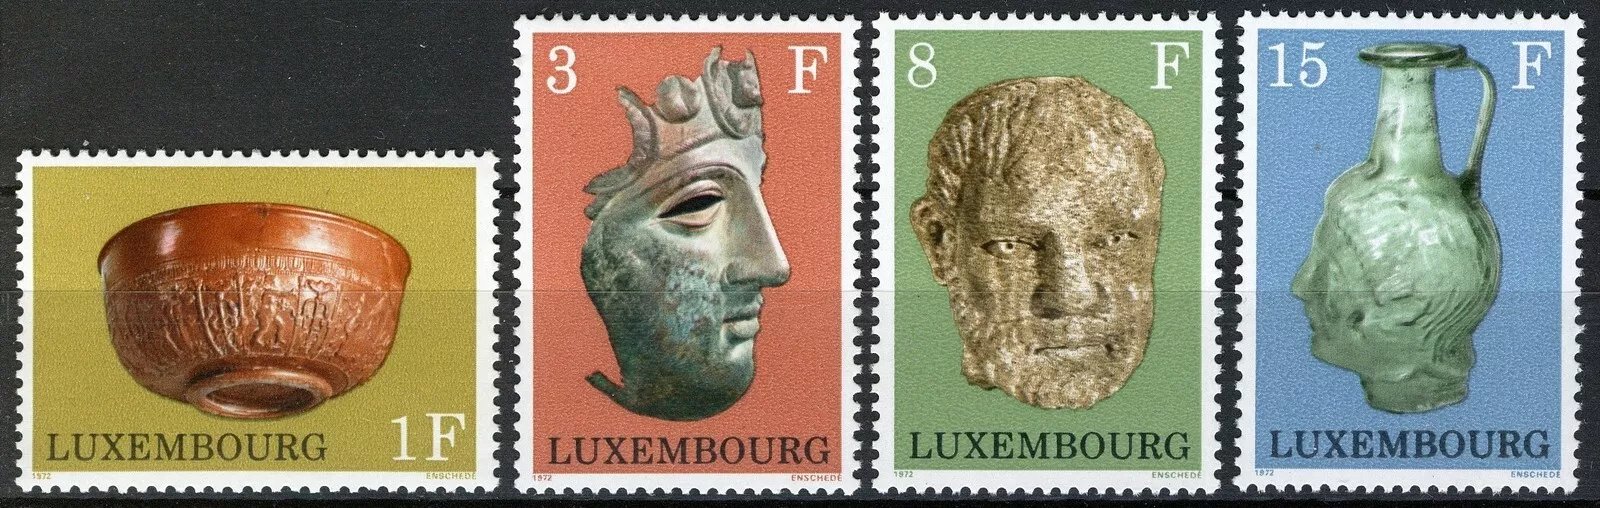 Luxemburg 1972 - Arheologie, cultura, artefacte, serie neuzata